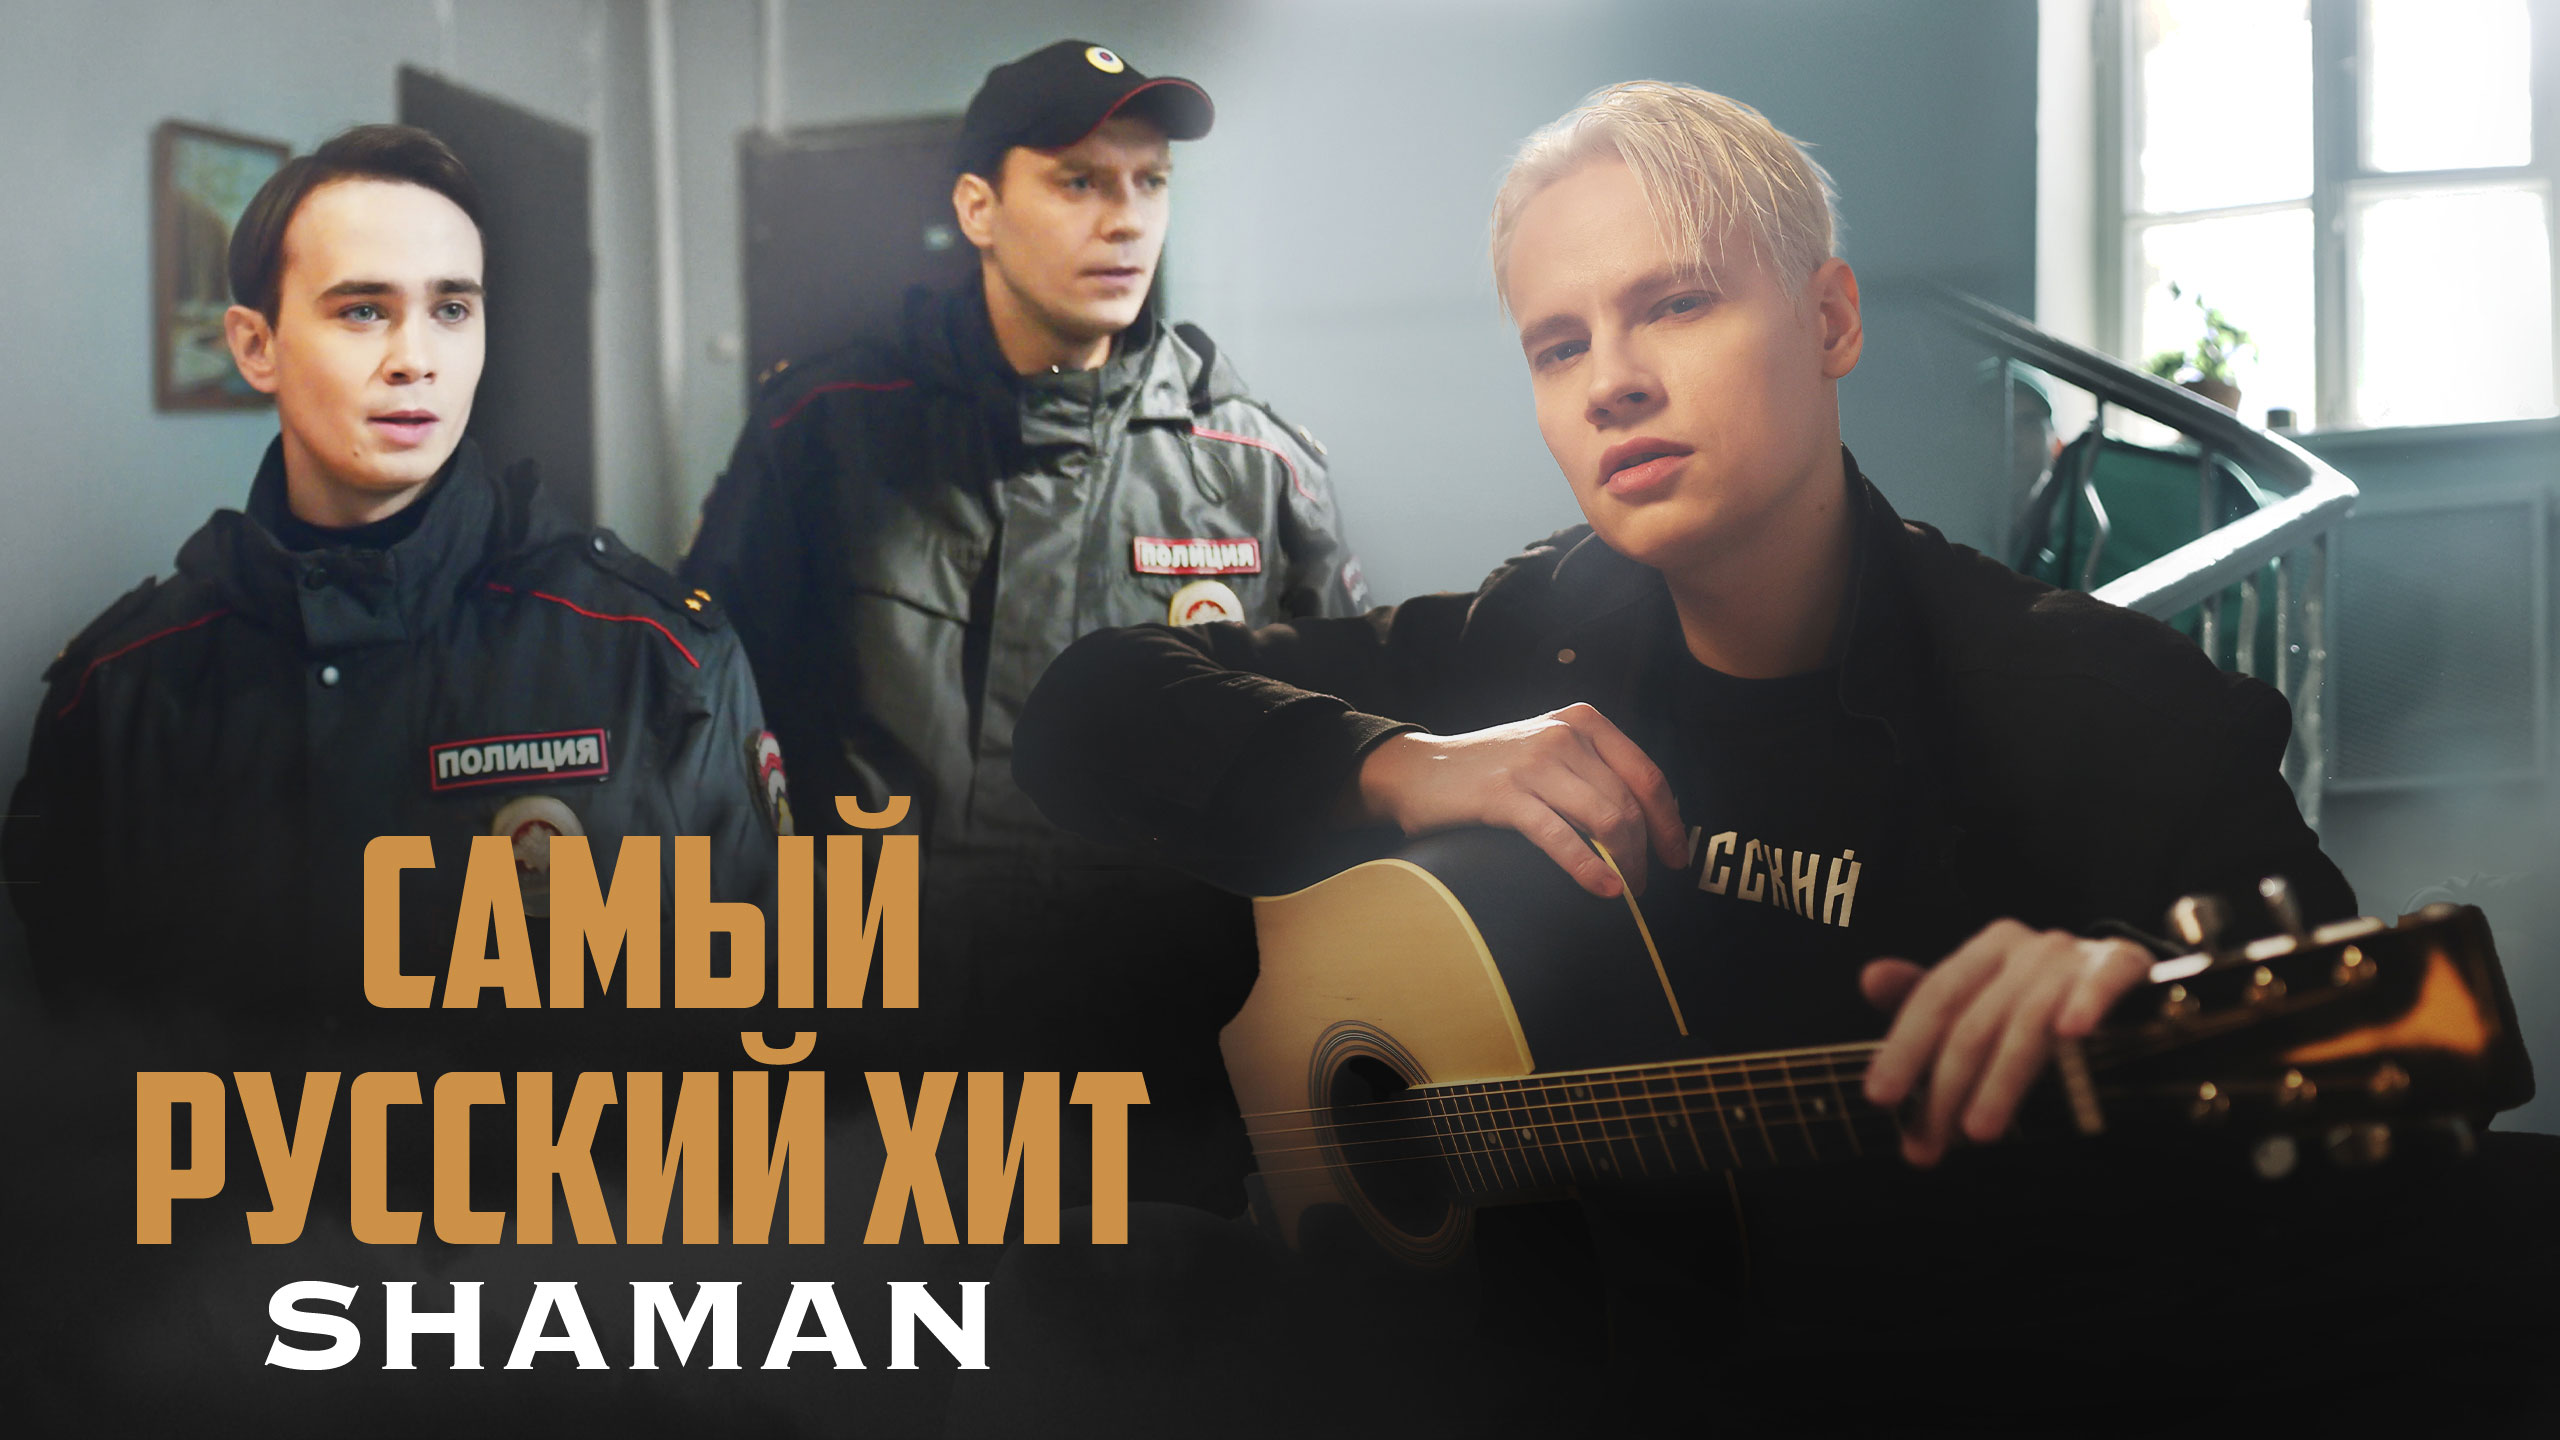 Шаман певец новые песни слушать. Самый русский хит шаман. Shaman (певец). Шаман певец 2023. Шаман певец самый русский хит.